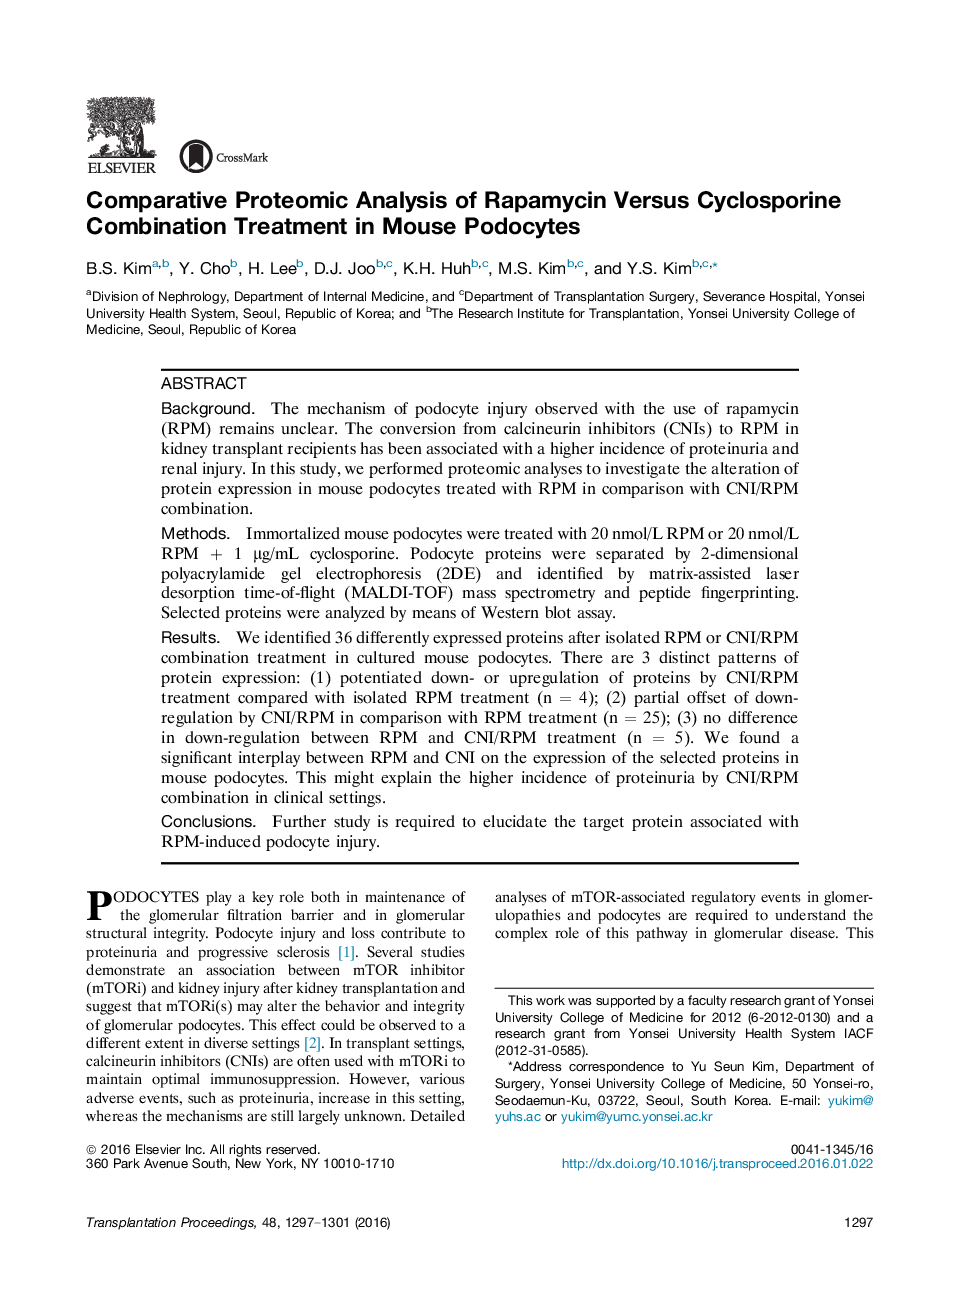 مقایسه پروتئومیکای رپامایسین و درمان ترکیبی سیکلوسپورین در پوسوسیت های موش 